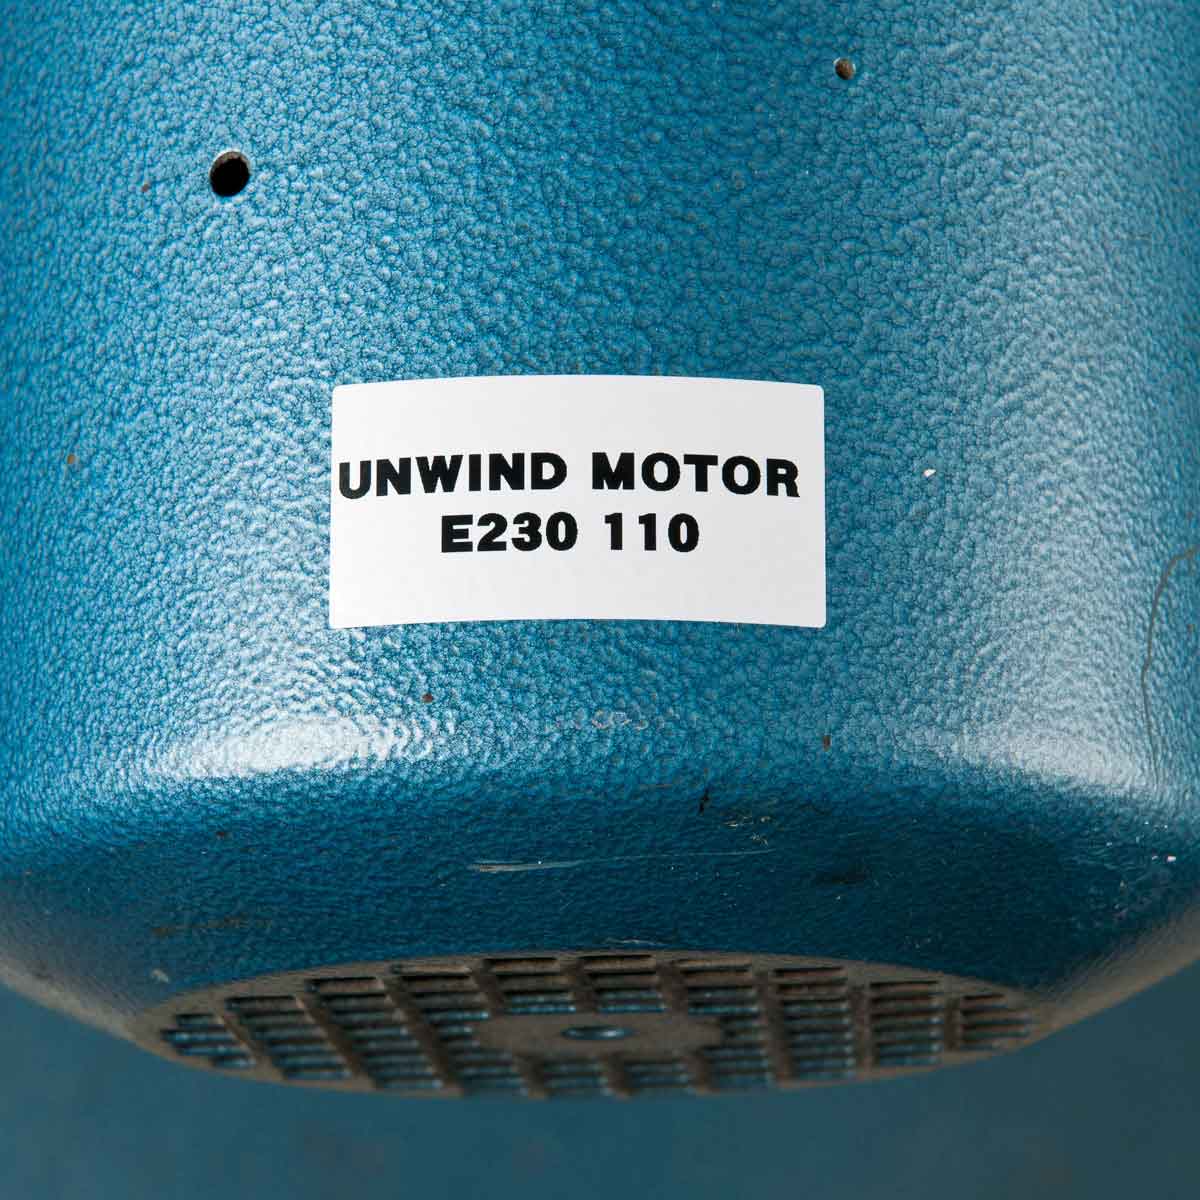 BRADY Für den Thermotransferdruck geeignete Etiketten THT-102-422-10 14957